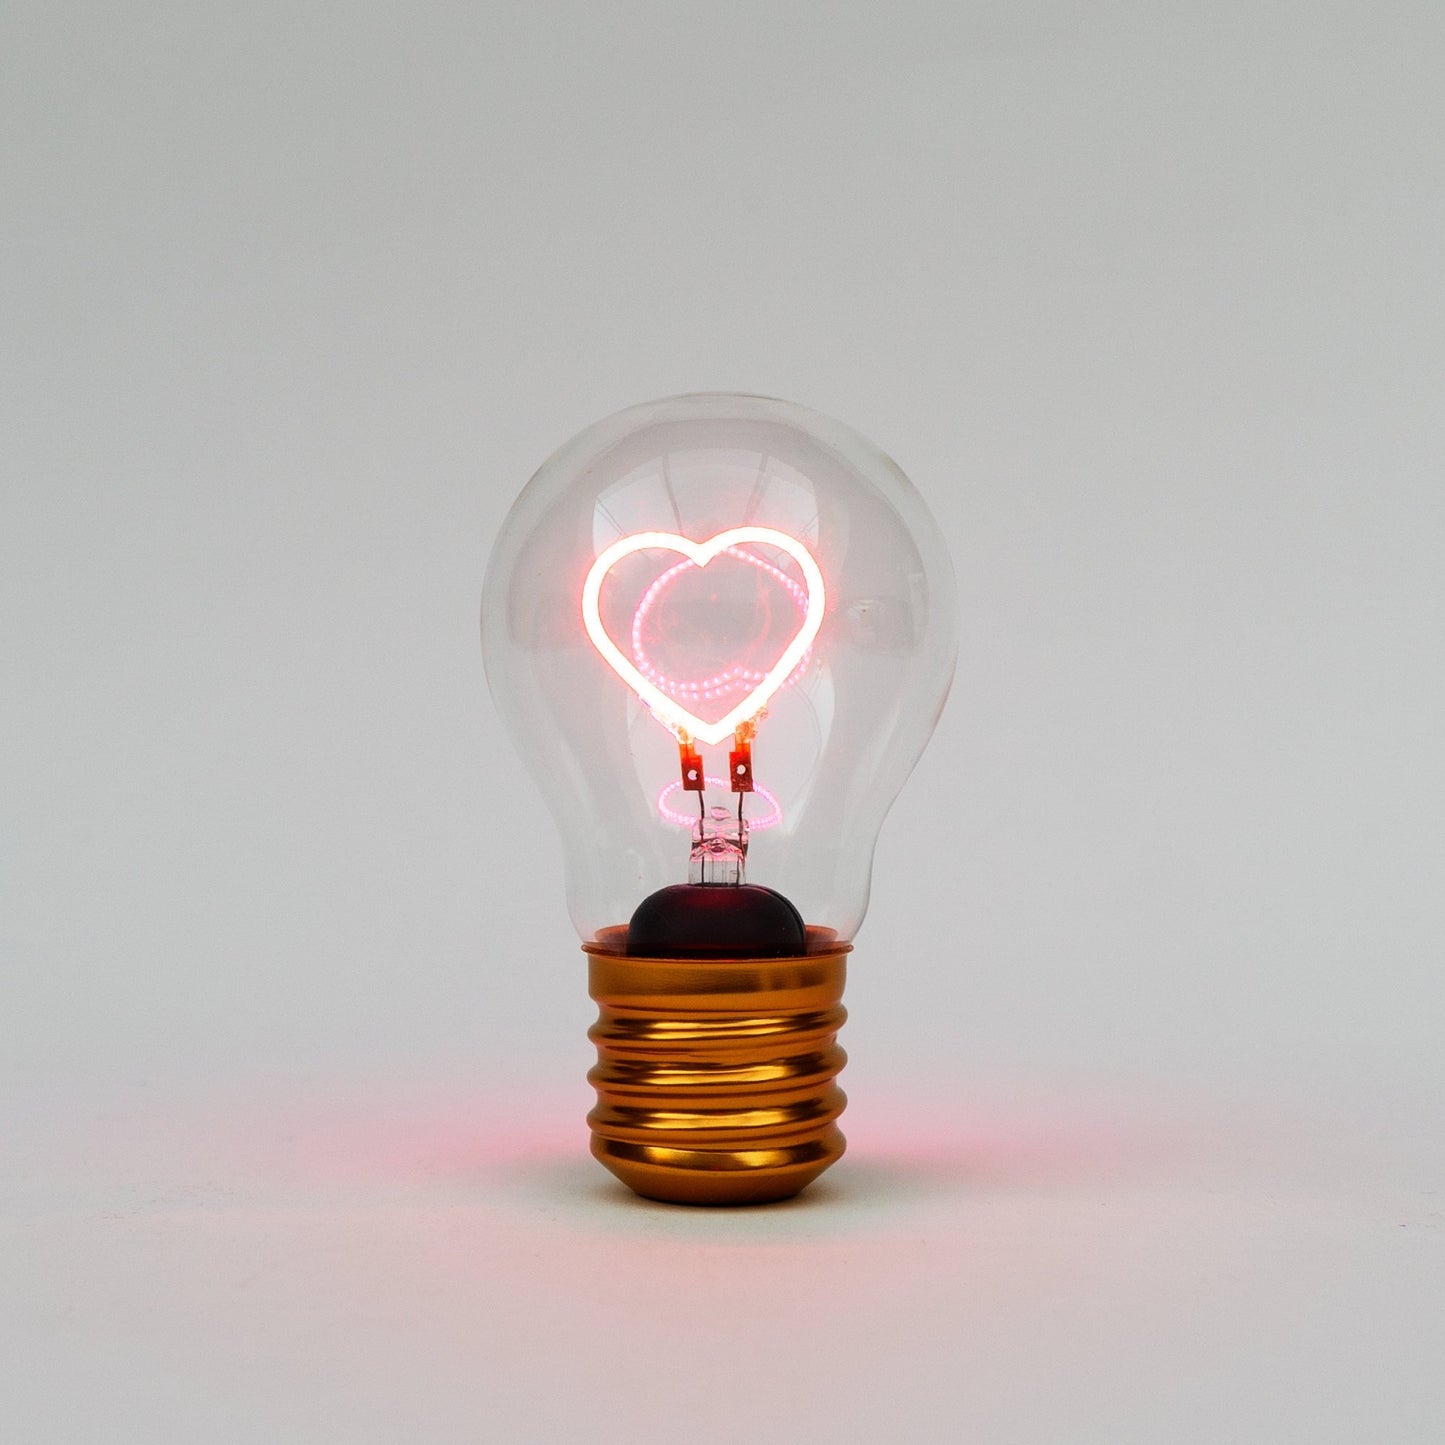 Cordless Heart Lightbulb - BetterThanFlowers